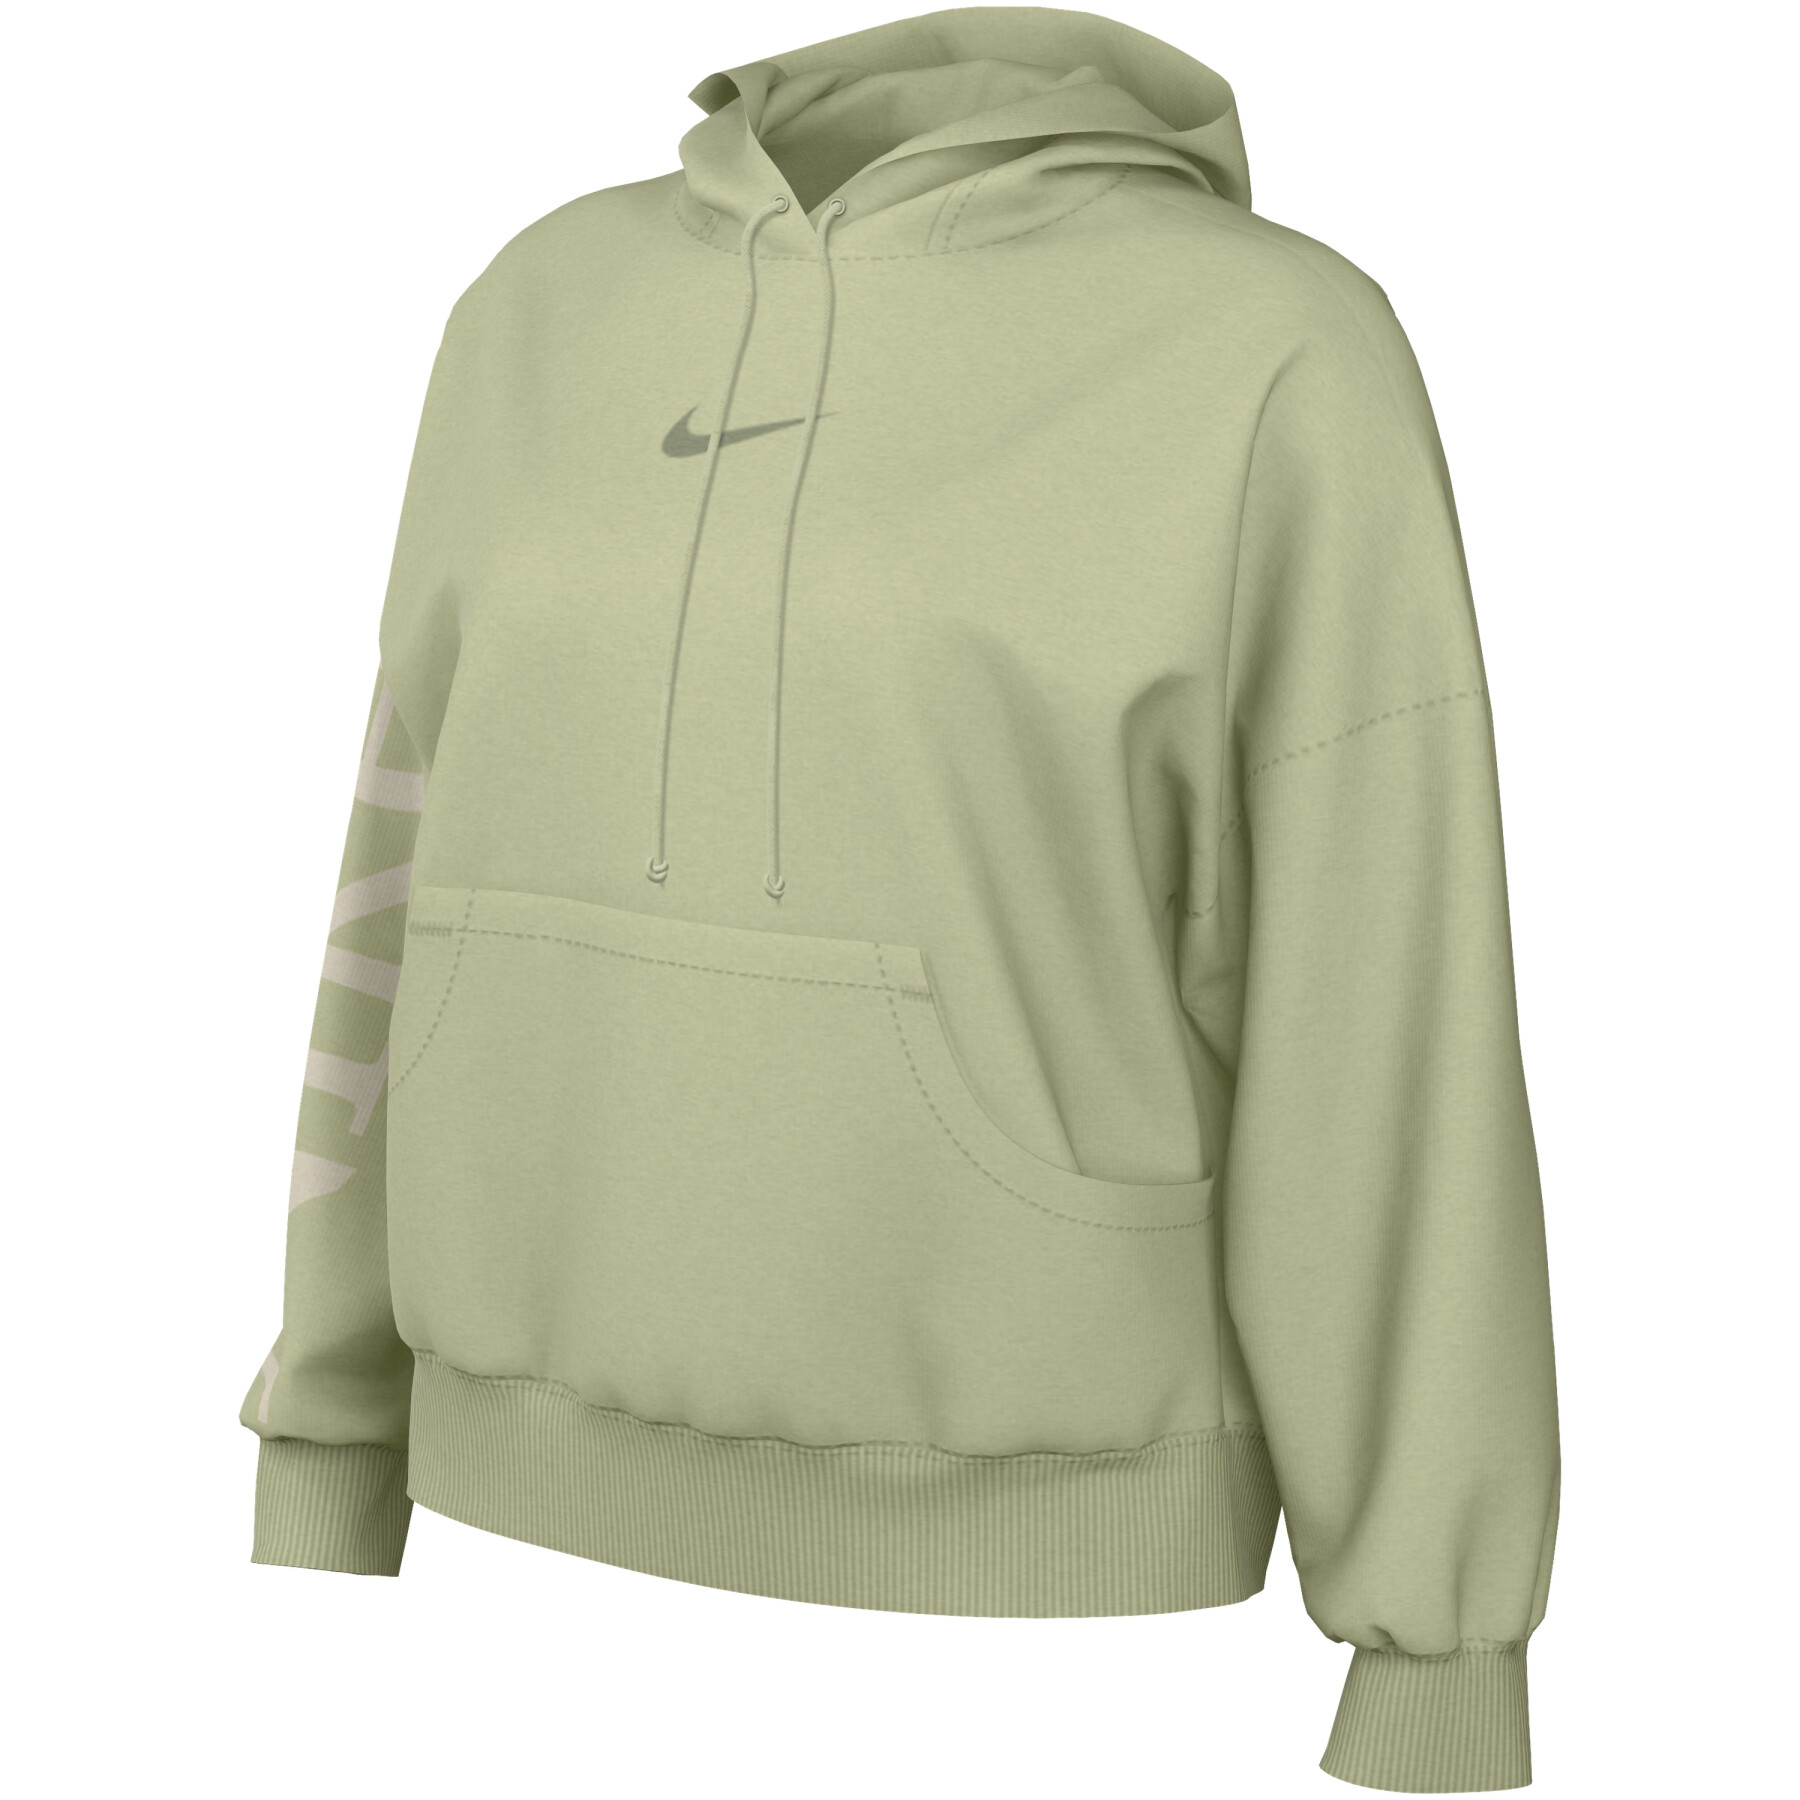 Women's oversized hooded sweatshirt Nike Phoenix Fleece